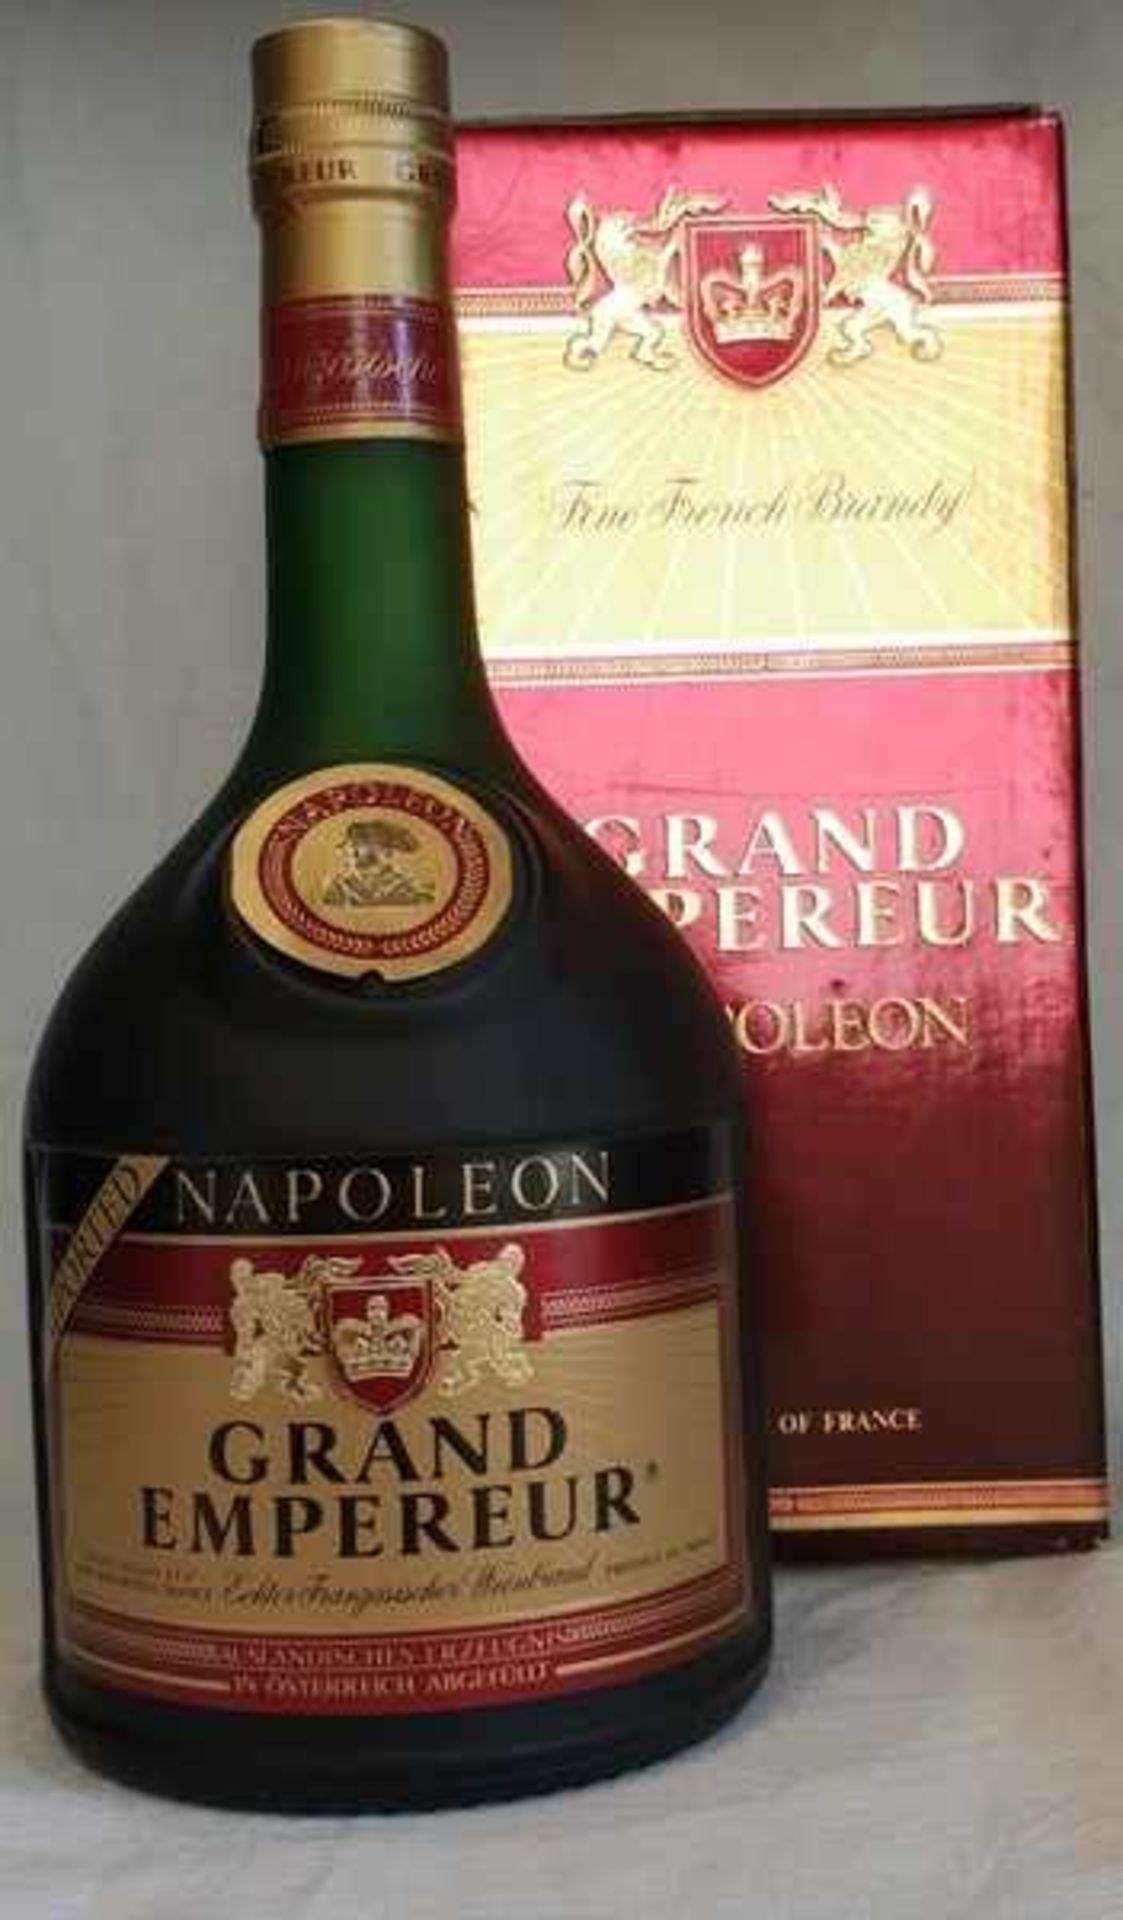 Grand Empereur Napoleon ,The french Brandy, im Original Karton, 0,7 Liter (70cl), ungeöffnet